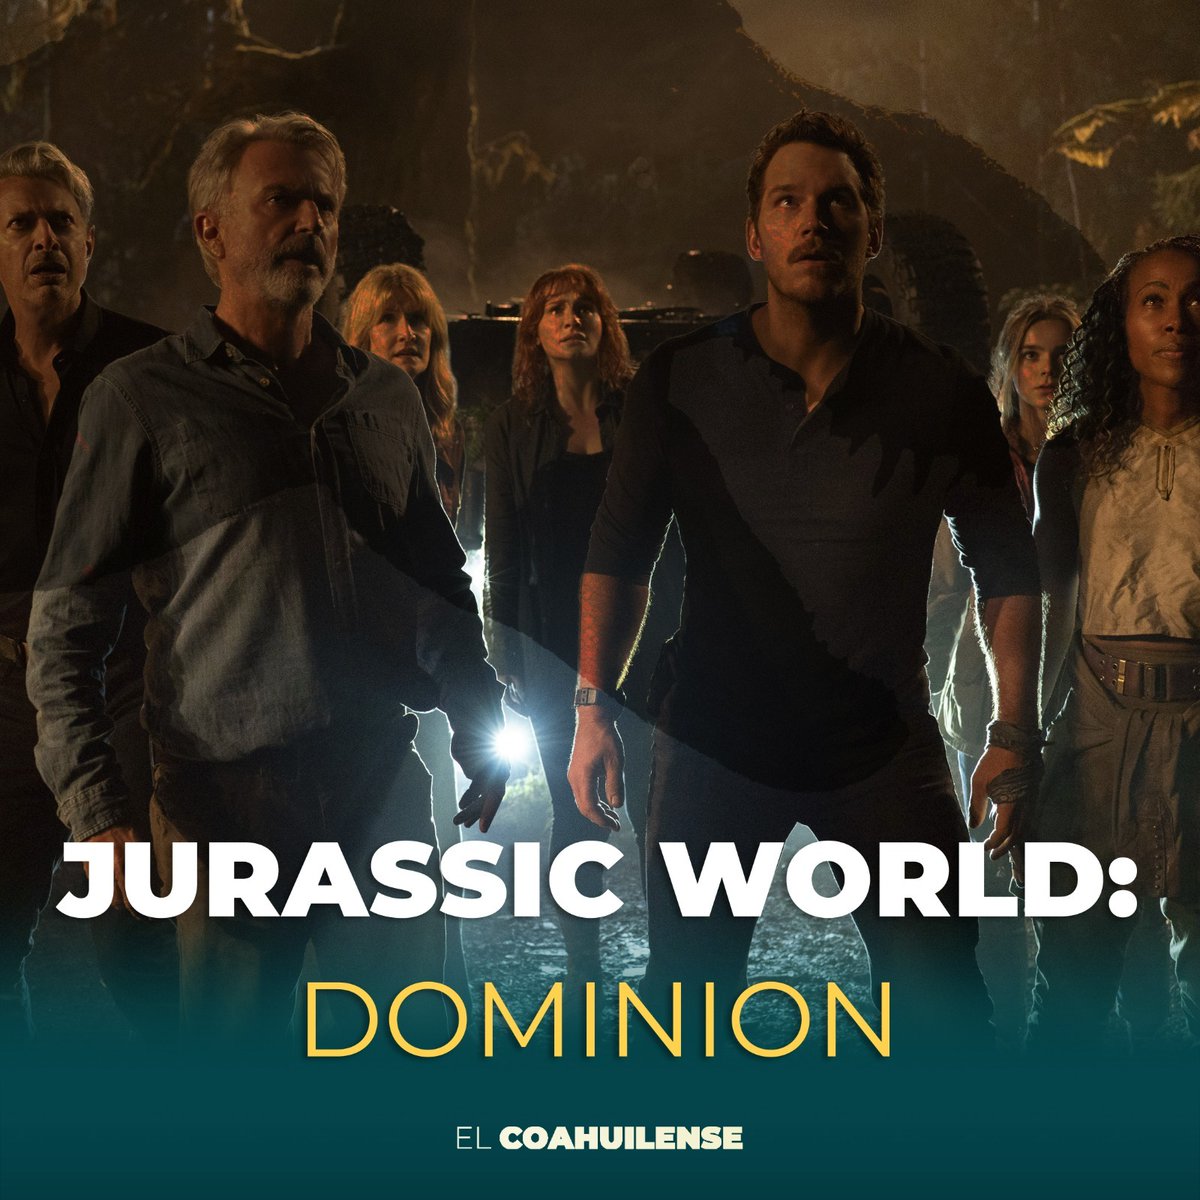 #JurassicWorldDominion | La fascinación por los dinosaurios ha convertido en un éxito a la fructífera franquicia, que ahora se presenta bajo el nombre de Jurassic World: Dominion que es, en esencia, más de lo mismo.
🖋 @LucianoCamposG 👉tinyurl.com/225kewn8